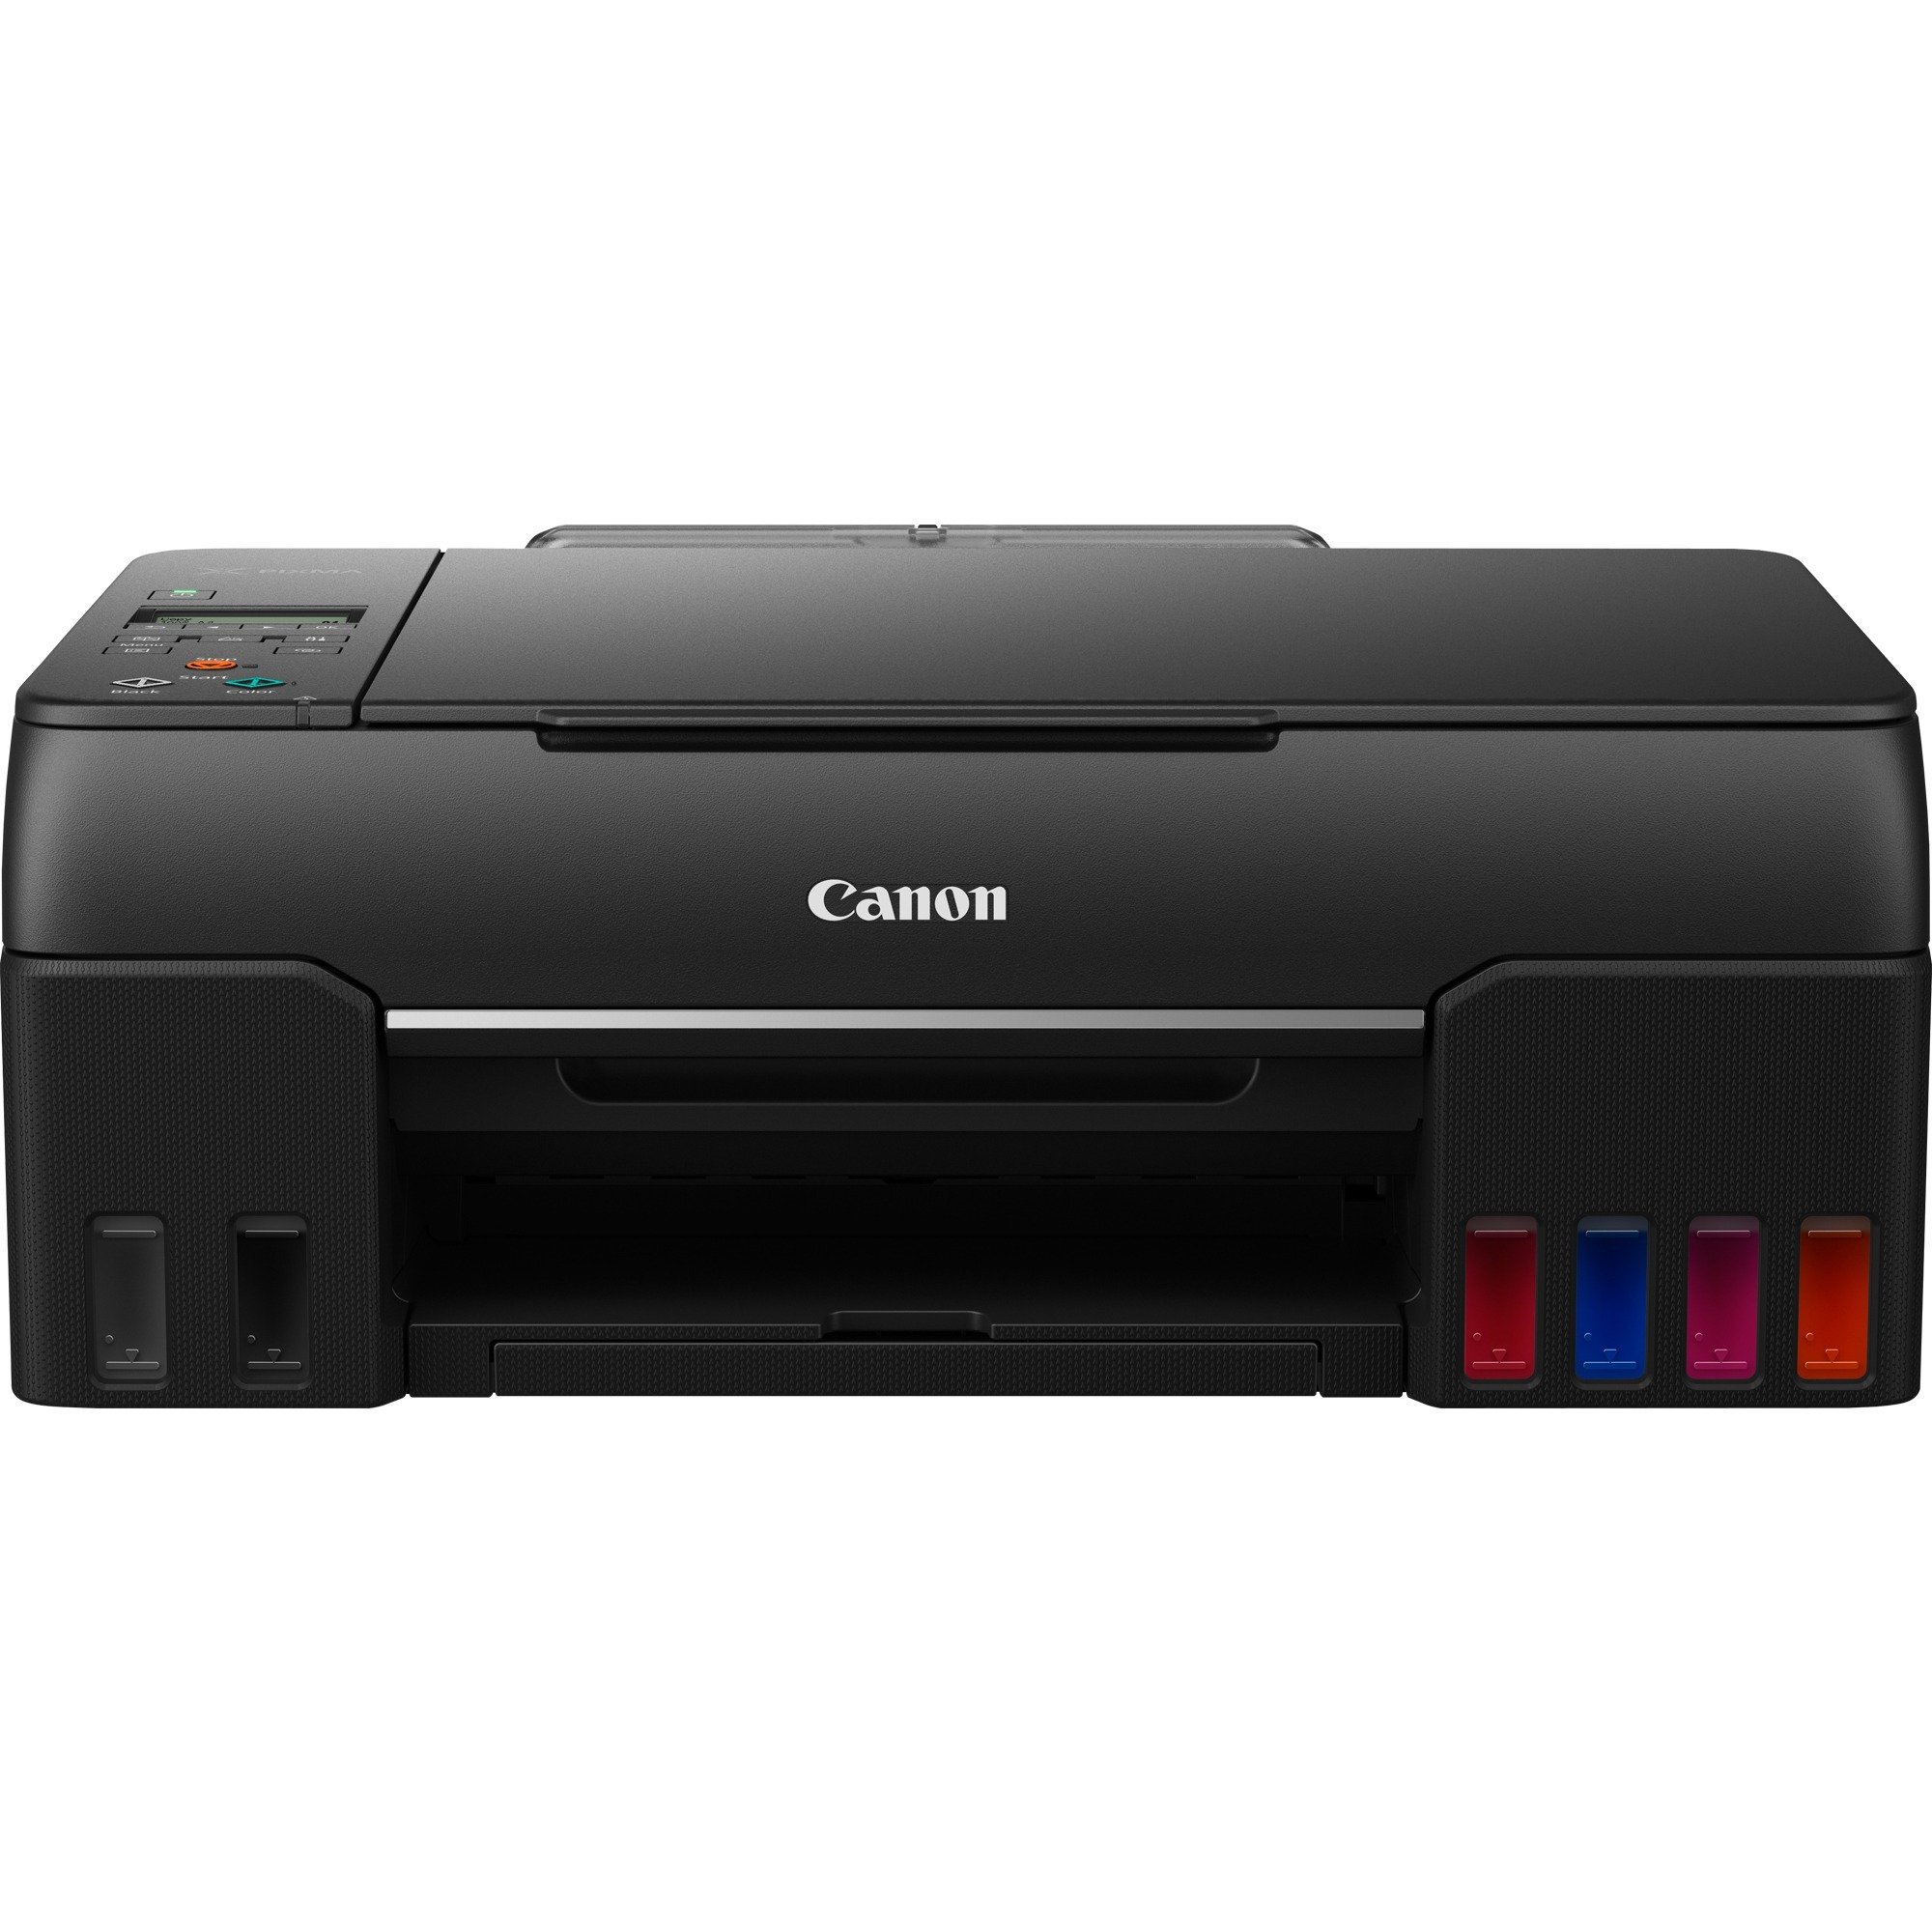 Image of Alternate - PIXMA G650, Multifunktionsdrucker online einkaufen bei Alternate